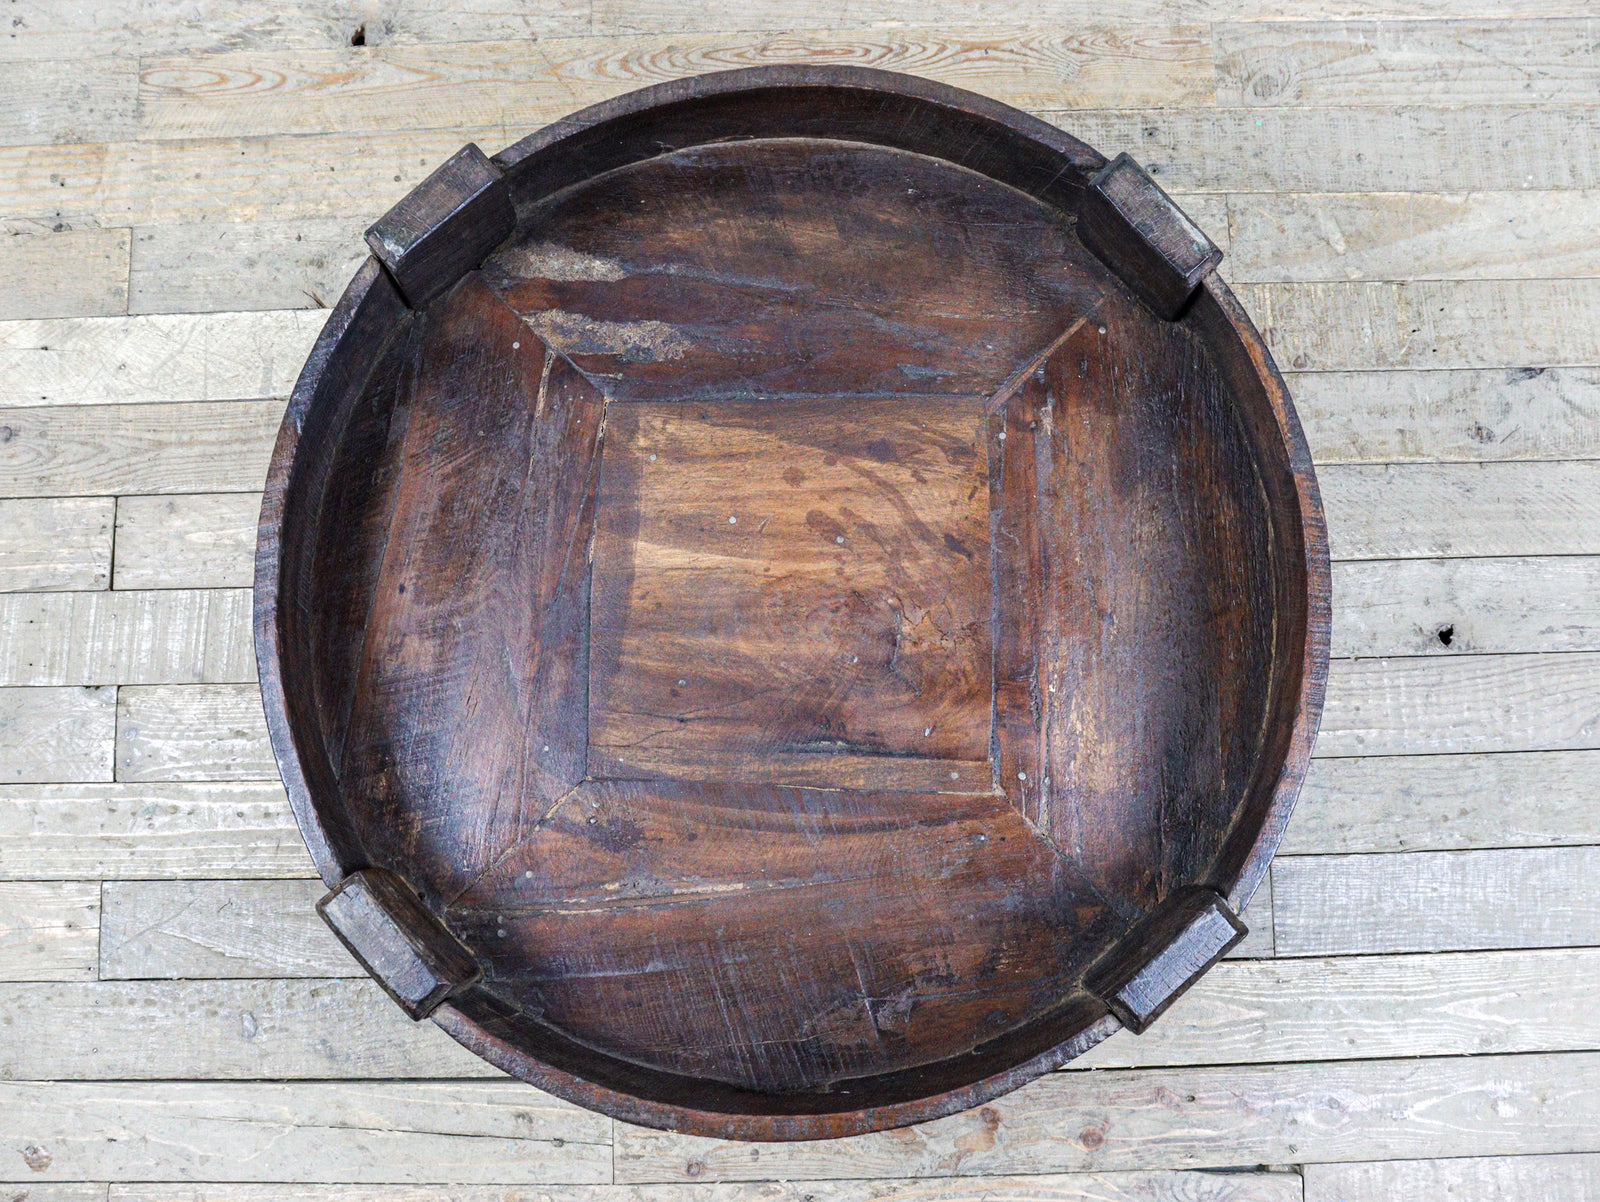 MILL-1555/19 Wooden Chakki Table C25